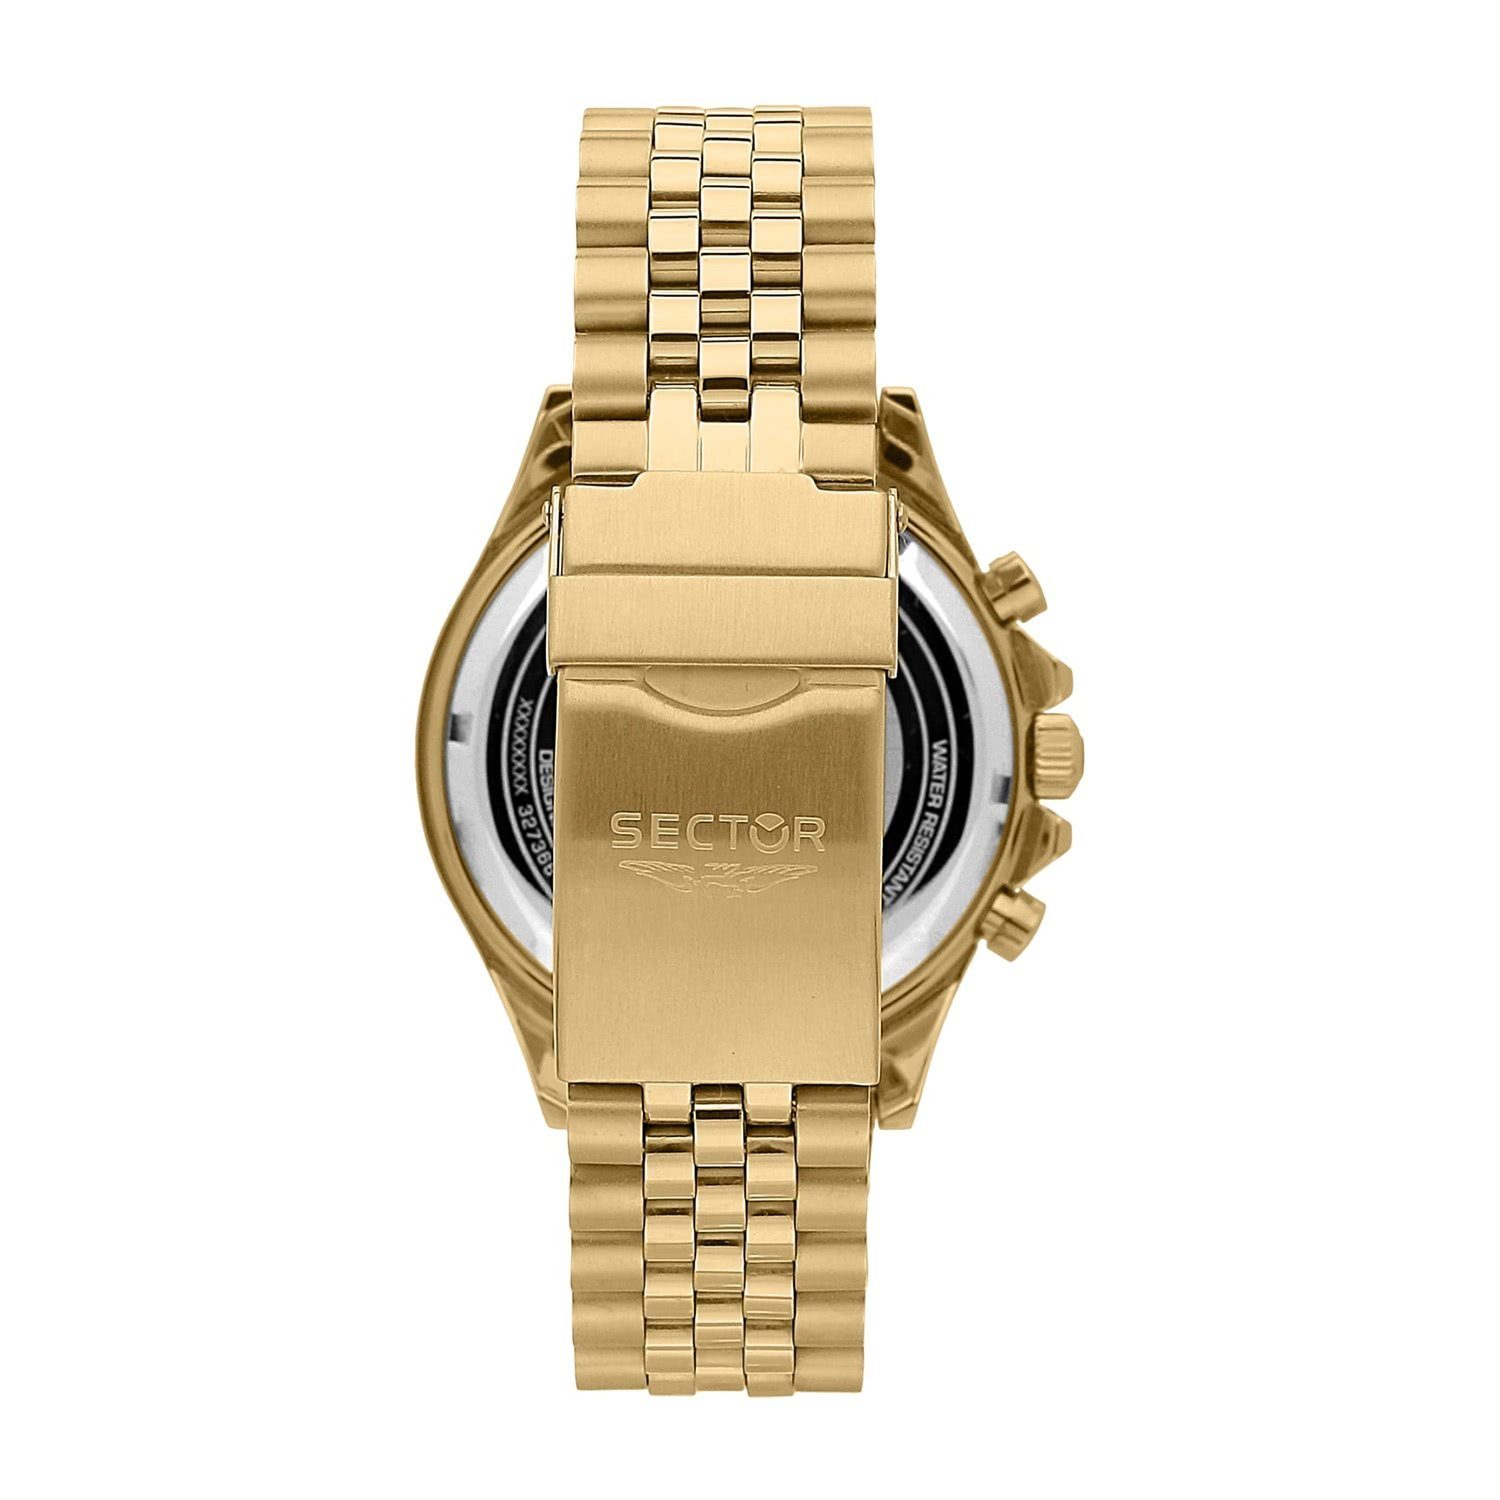 Herren (43mm), Chrono, Edelstahlarmband Chronograph Fashion Sector gold, groß Armbanduhr Sector rund, Herren Armbanduhr